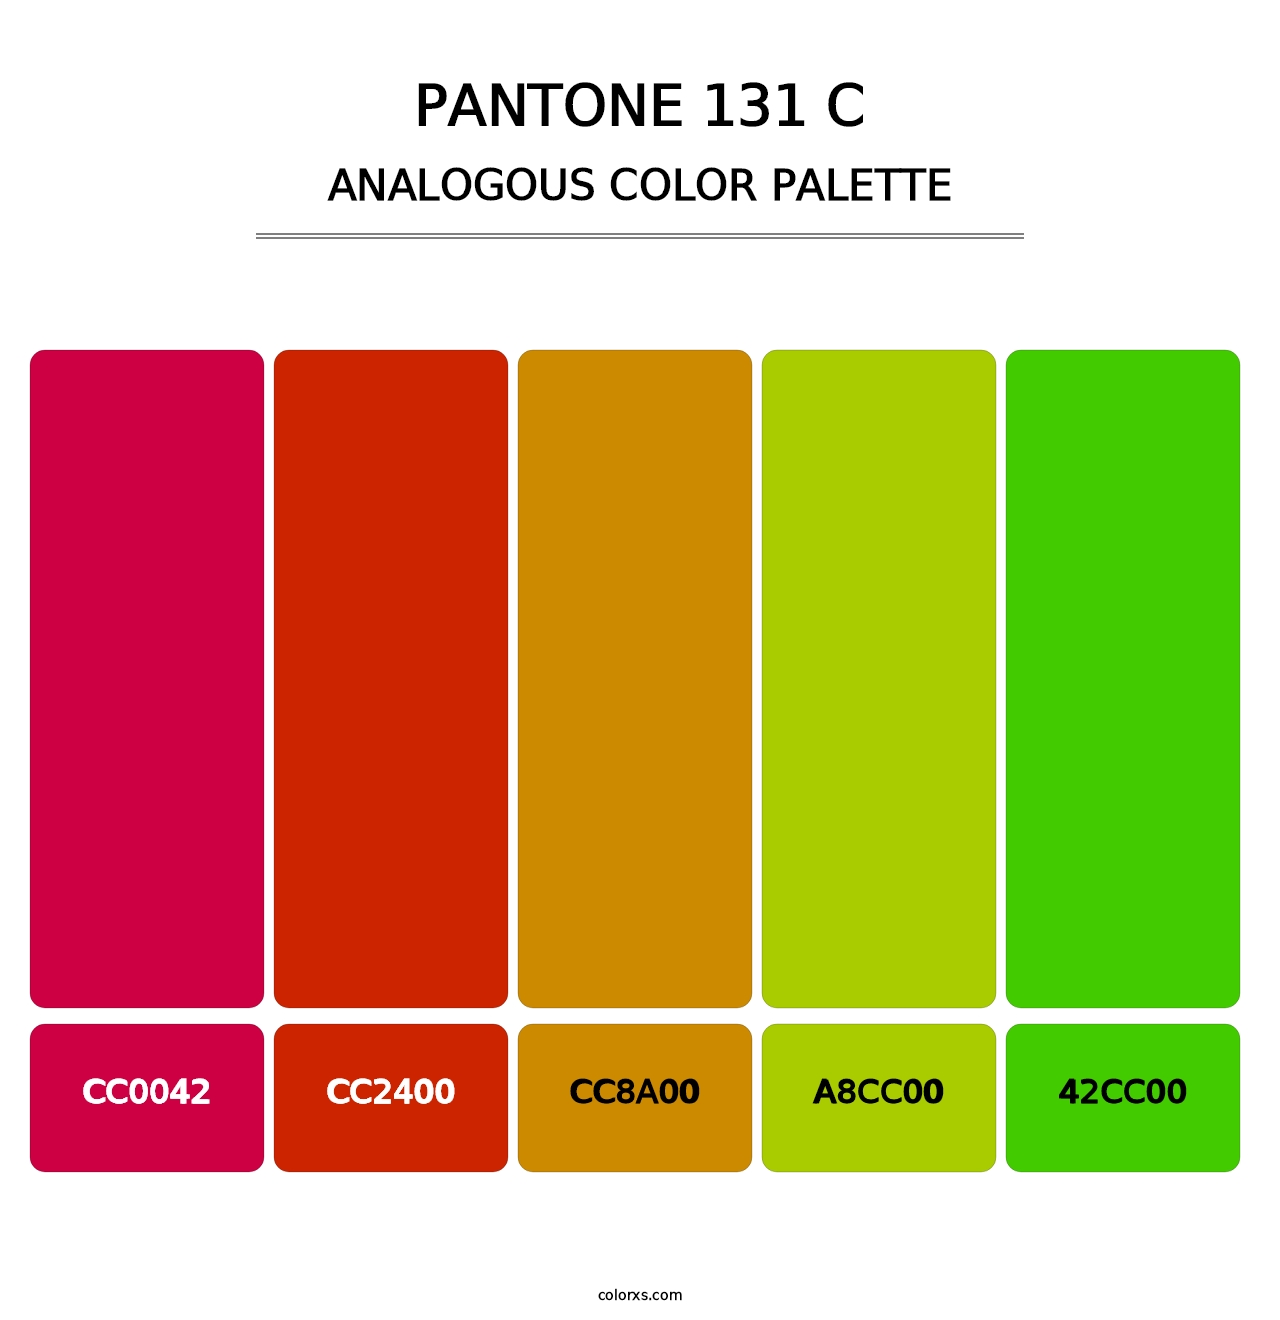 PANTONE 131 C - Analogous Color Palette